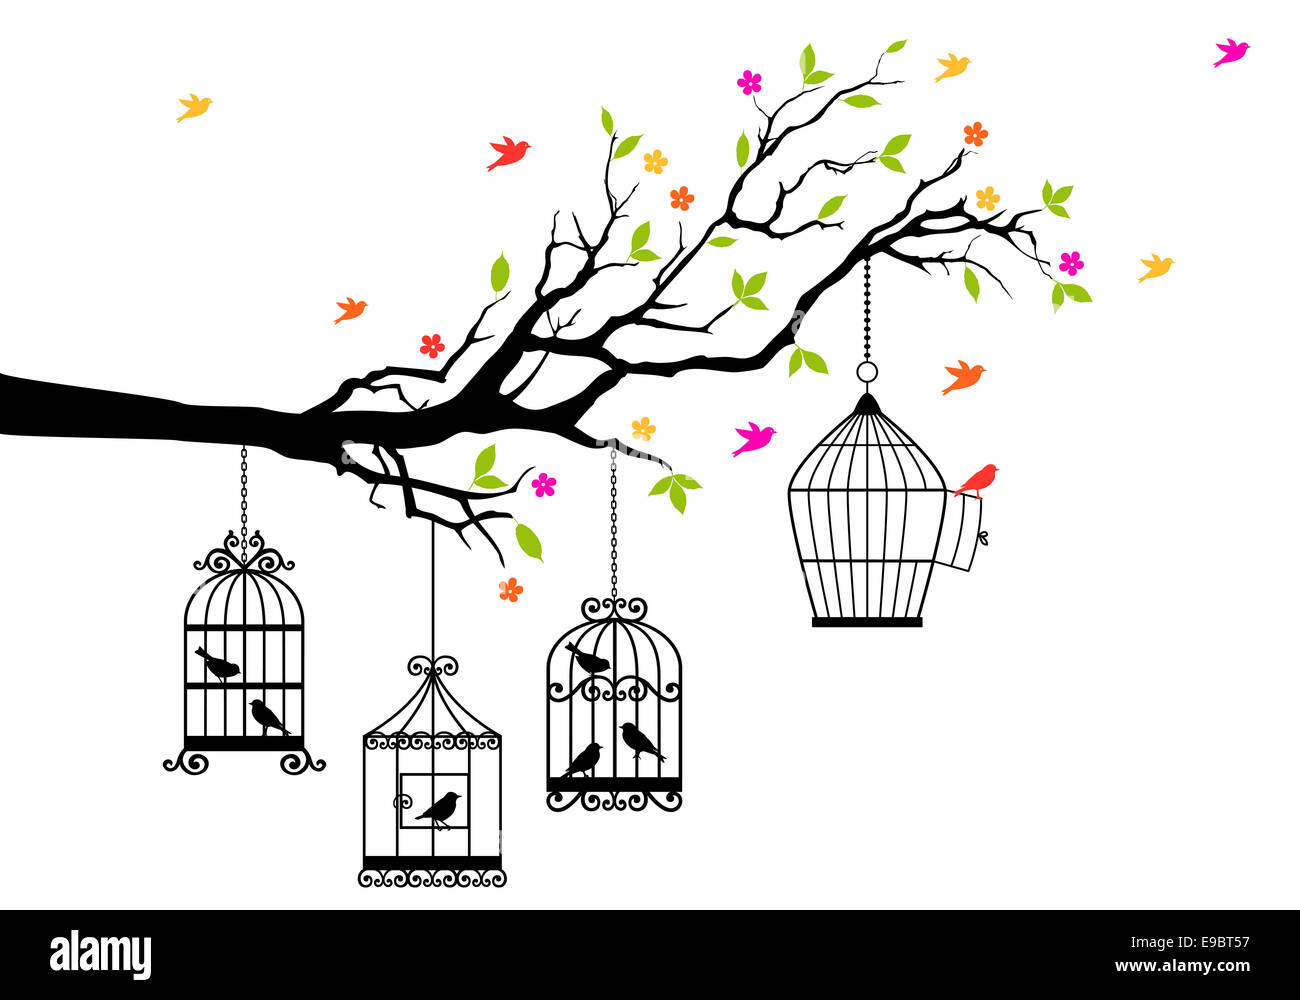 Freiheit, Ast mit Vögel und offenen Vogelkäfig, Vektor-illustration Stockfoto